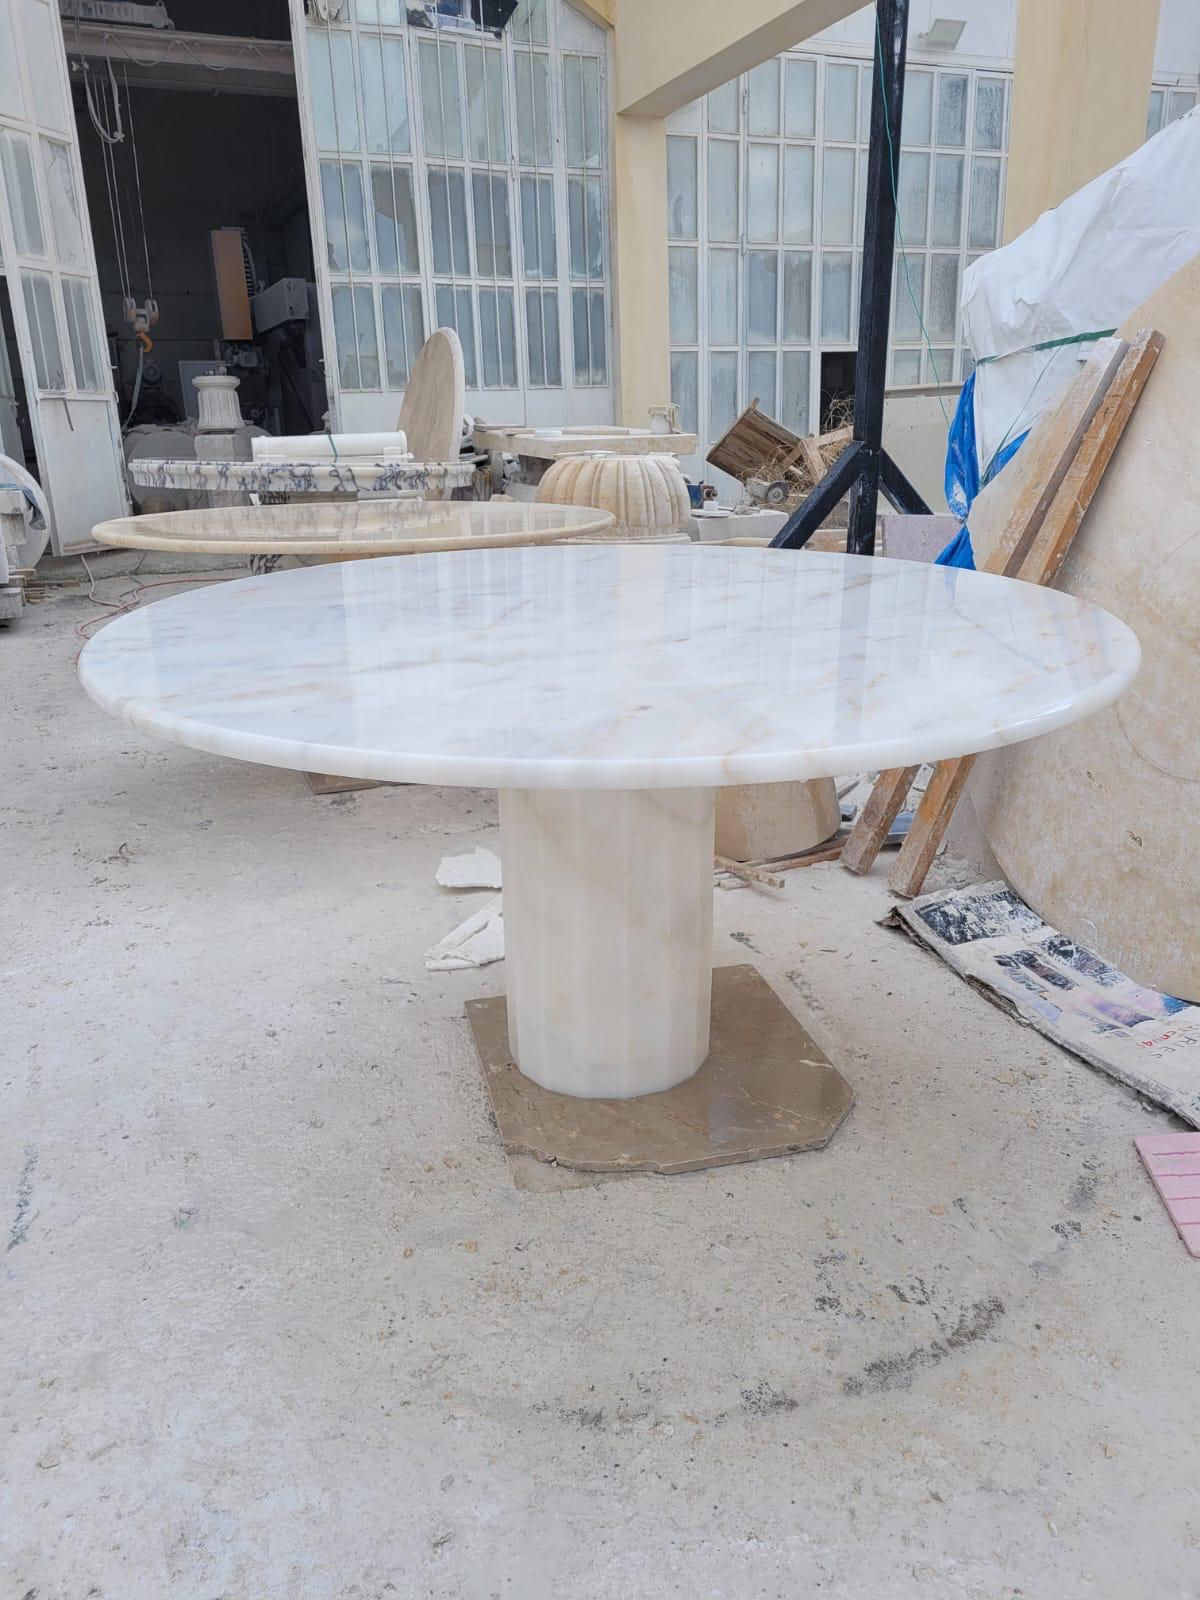 Dieser minimalistische Tisch aus weißem Marmor hat einen sechseckigen Fuß und eine runde Tischplatte aus Travertin, die durch ihr Eigengewicht perfekt und sicher balanciert. 

Funktionelles Stück mit Platz für Beinfreiheit.

Marmor ist nicht gleich